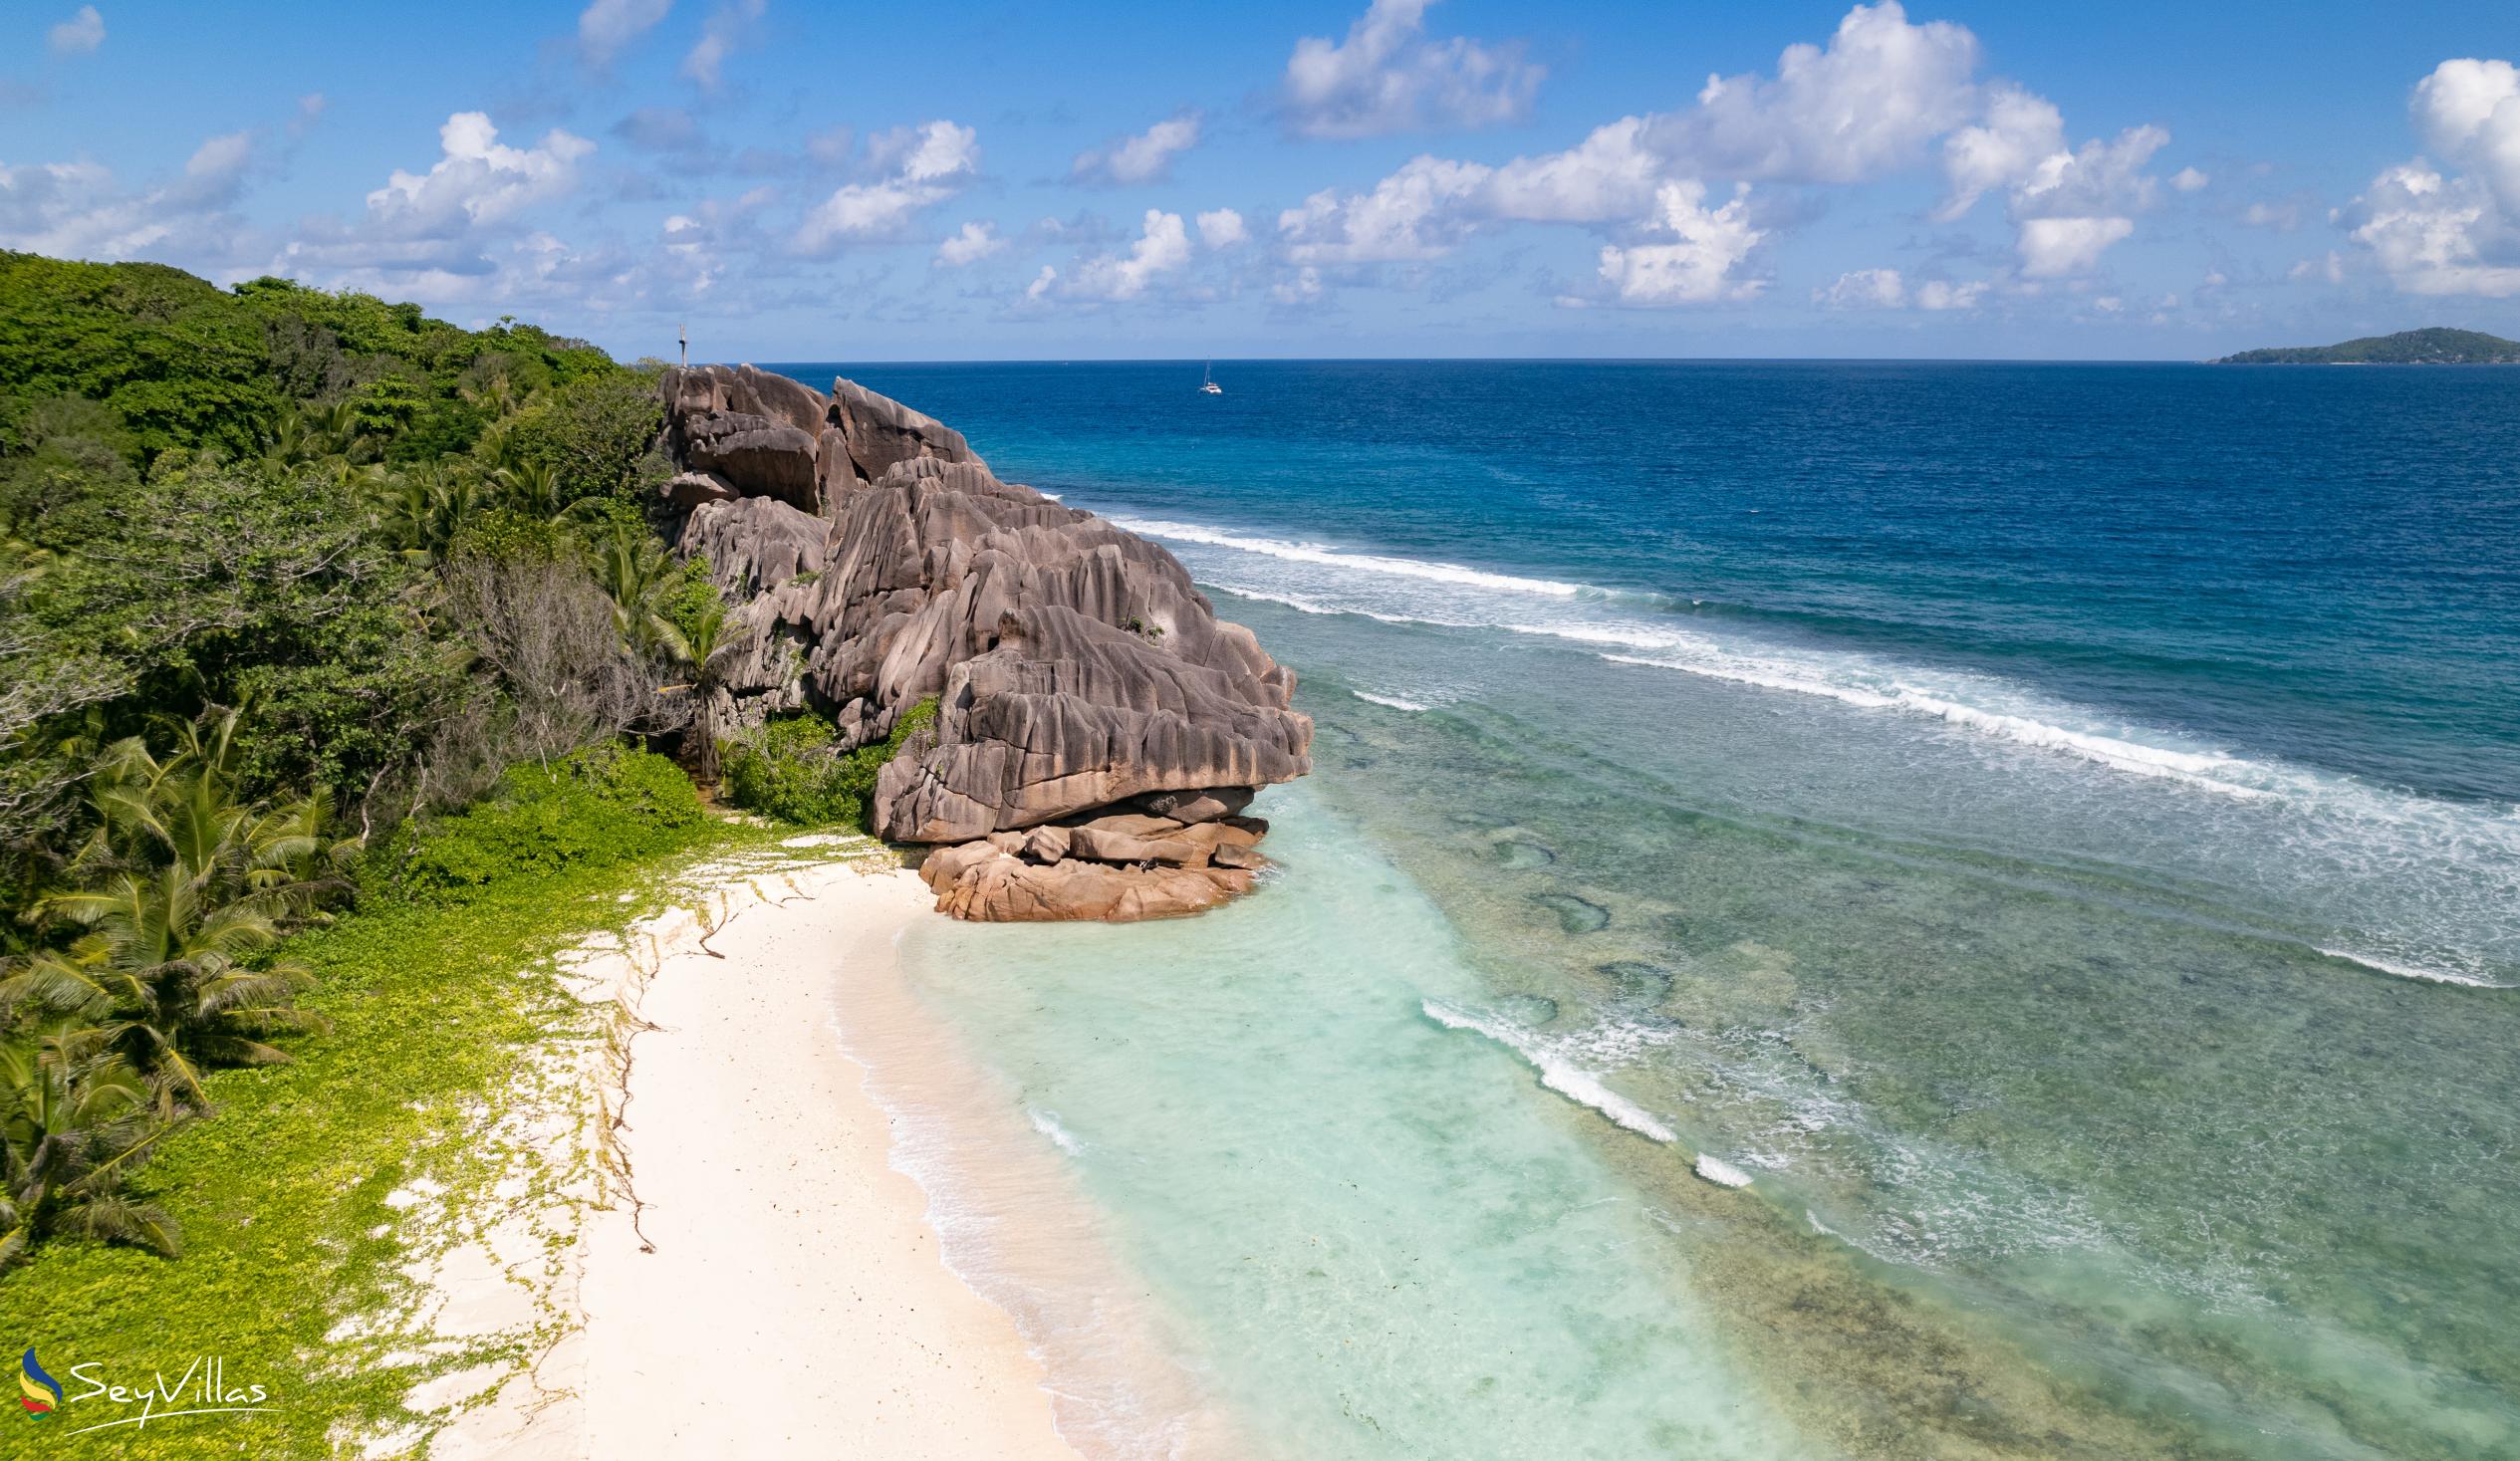 Foto 36: Anse Grosse Roche Beach Villa - Posizione - La Digue (Seychelles)